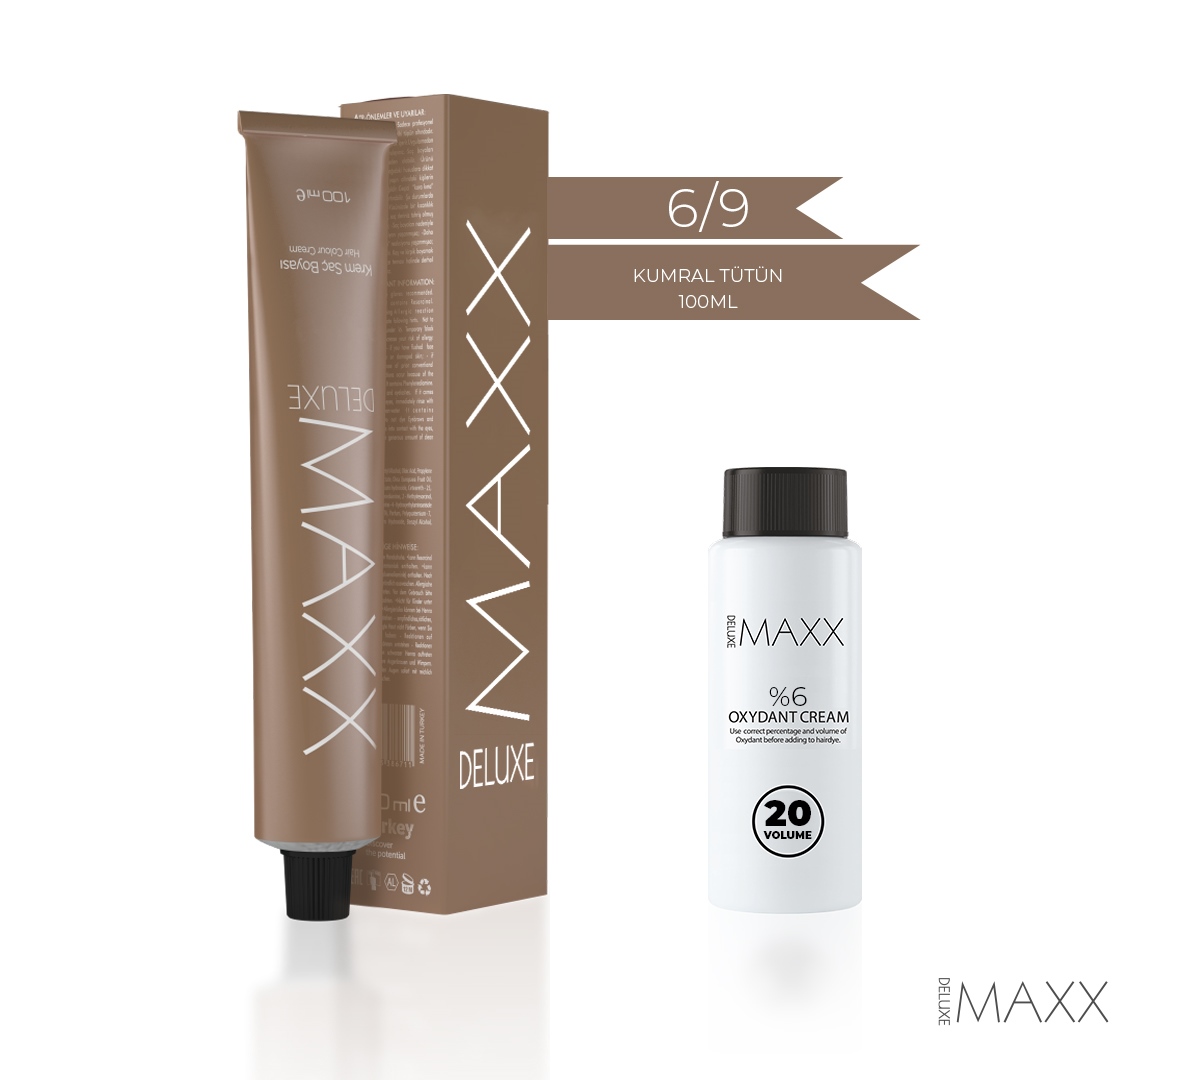 MAXX DELUXE KREM TÜP BOYA 100 ML |Lila Kozmetik Saç Boyaları ve Saç Bakım  Ürünleri